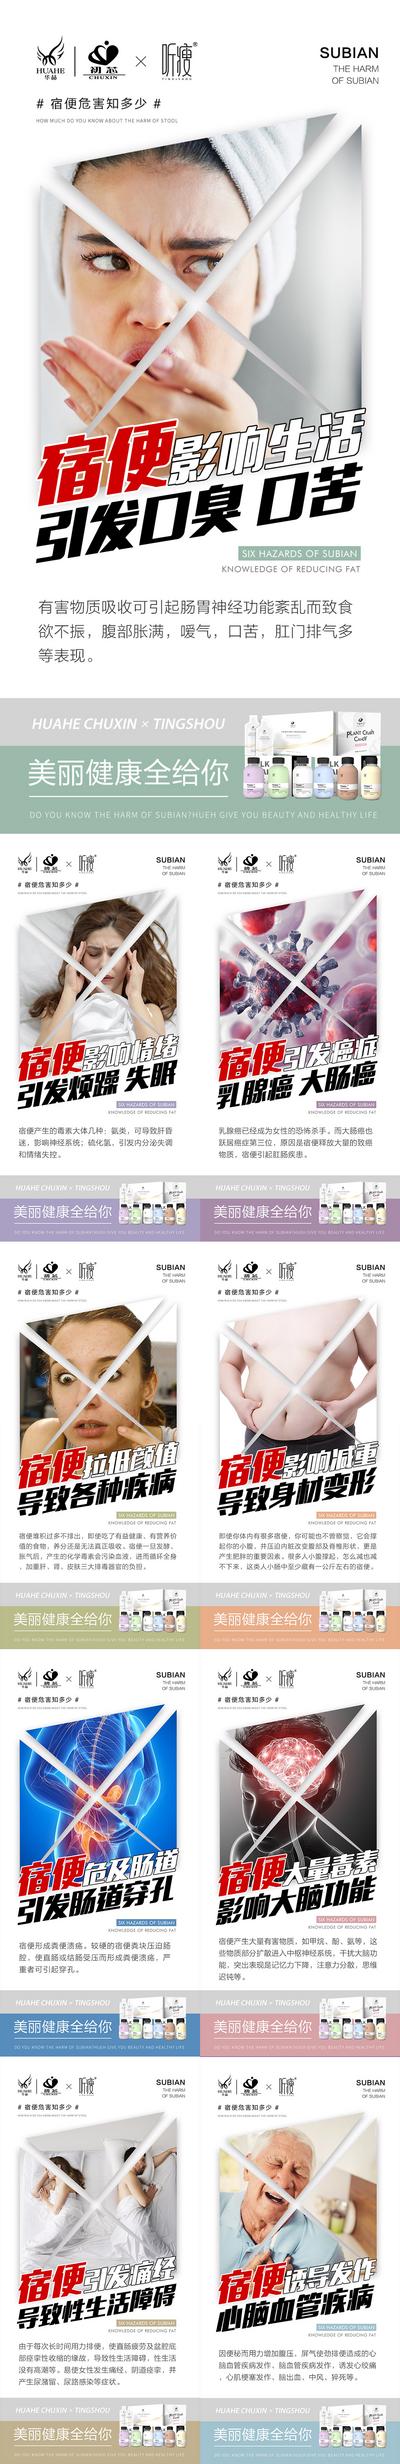 南门网 广告 海报 医美 口臭 痛点 宿便 肠道 系列 产品